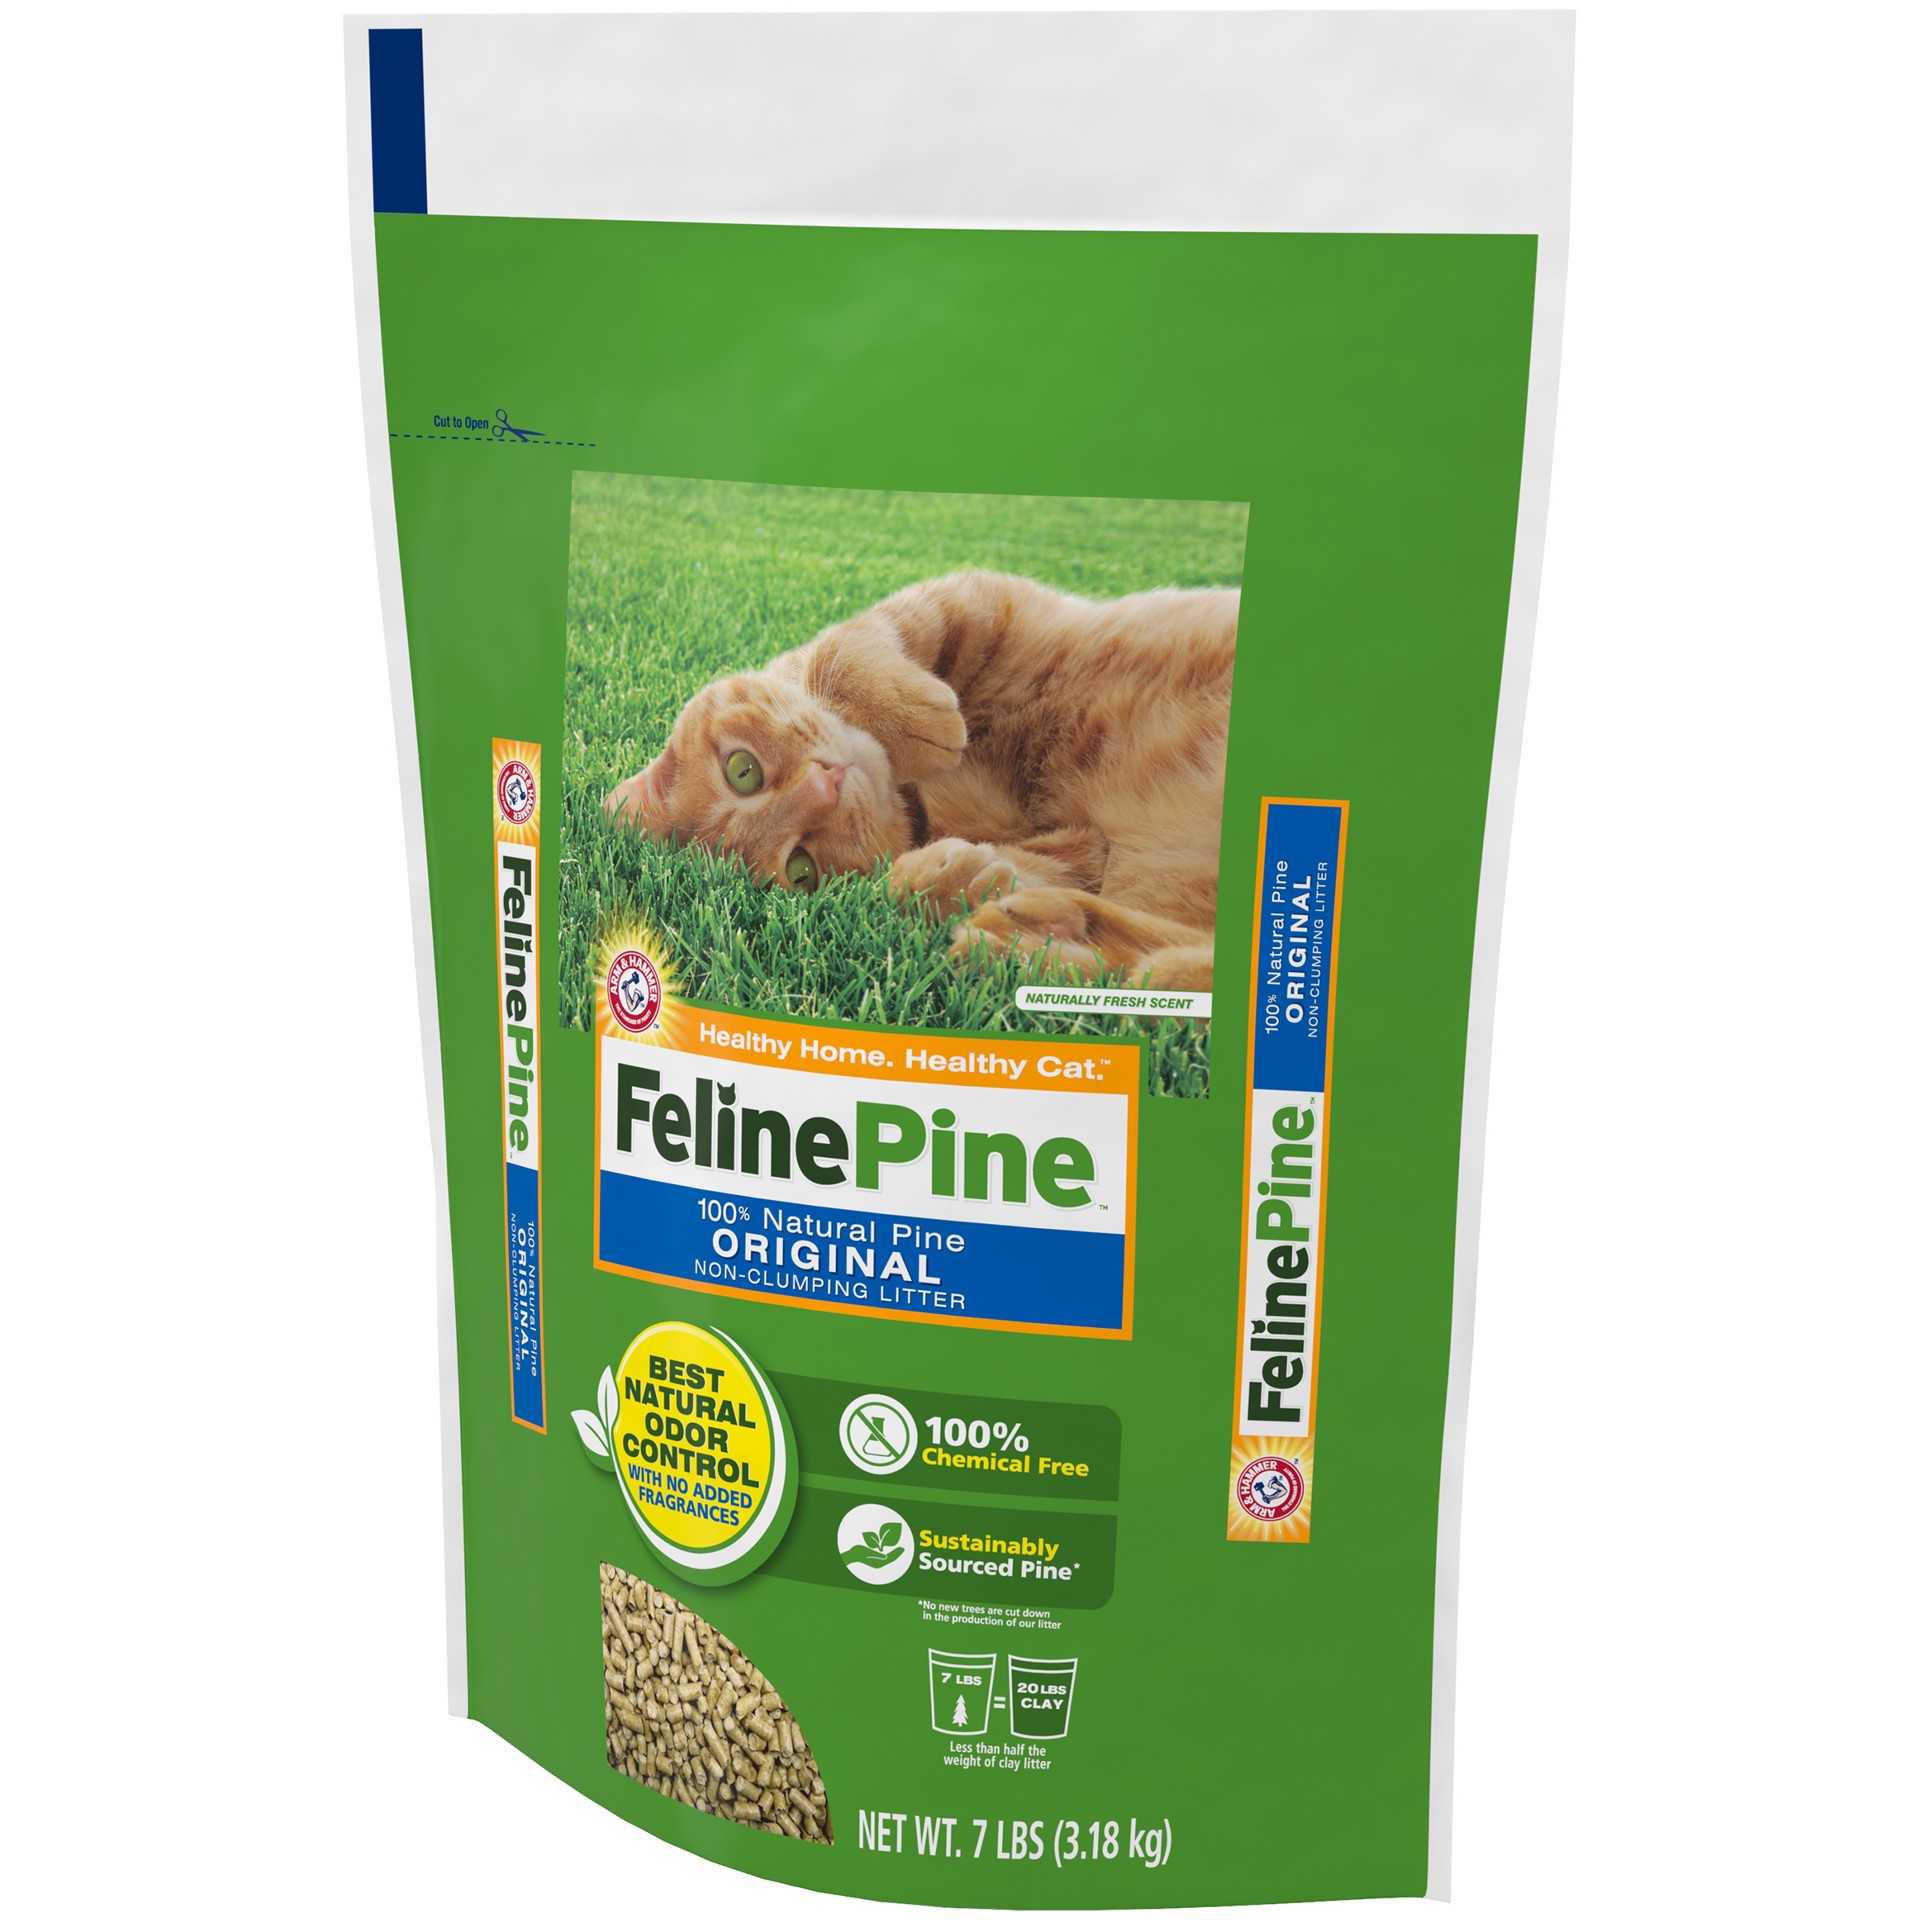 slide 2 of 5, Feline Pine Arm & Hammer Feline Pine 100% Natural Pine Original Non-Clumping Litter, 7 lb, 7 lb